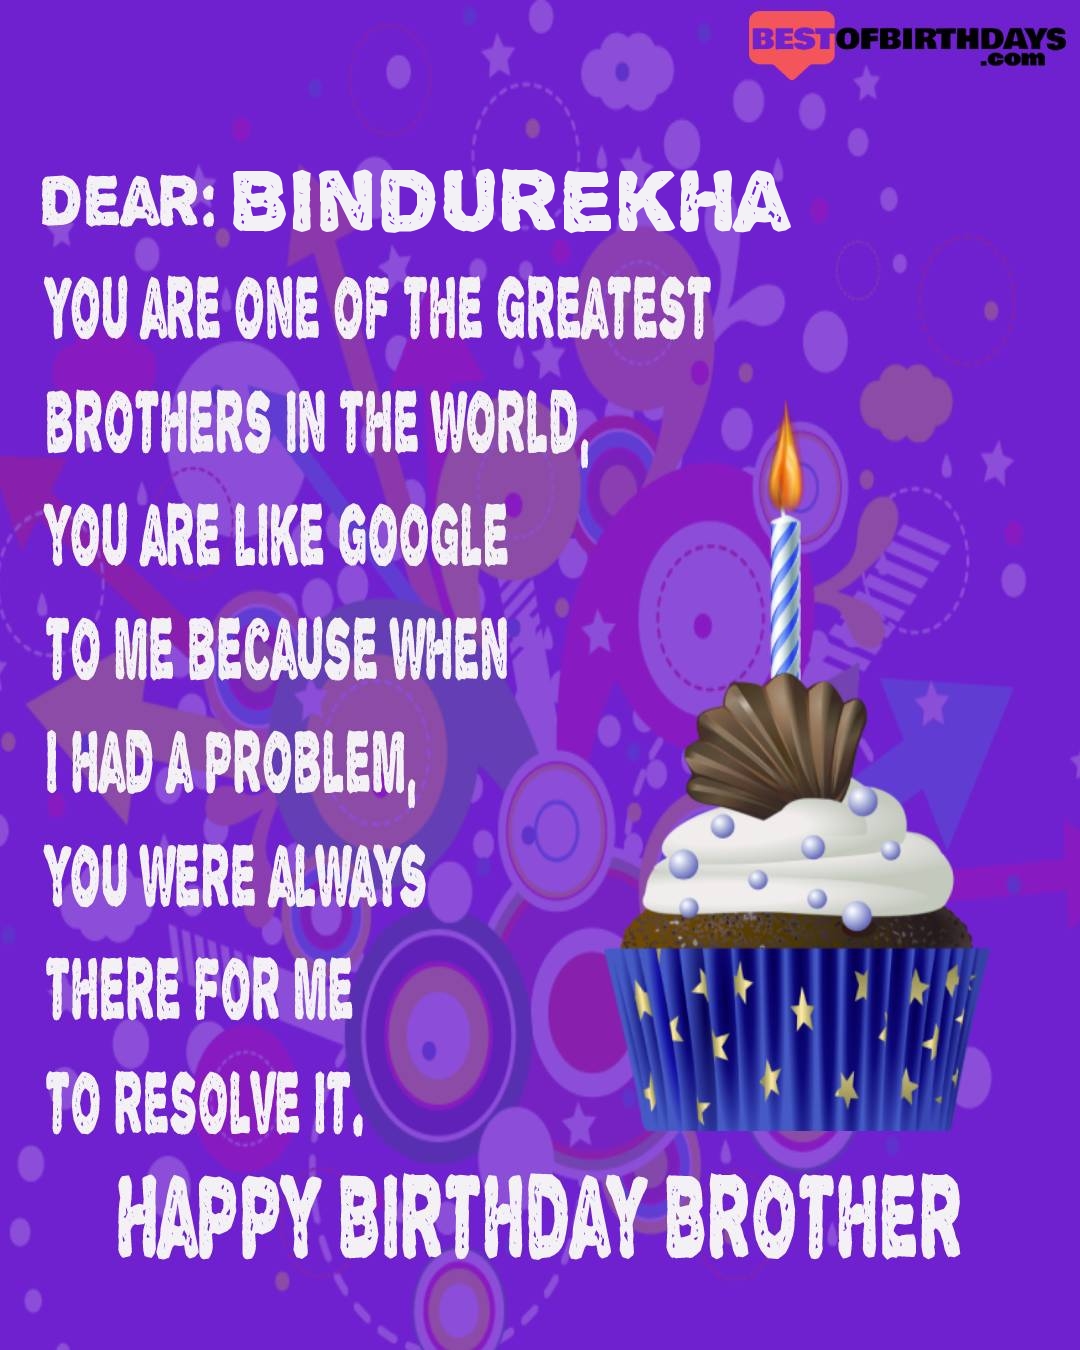 Happy birthday bindurekha bhai brother bro